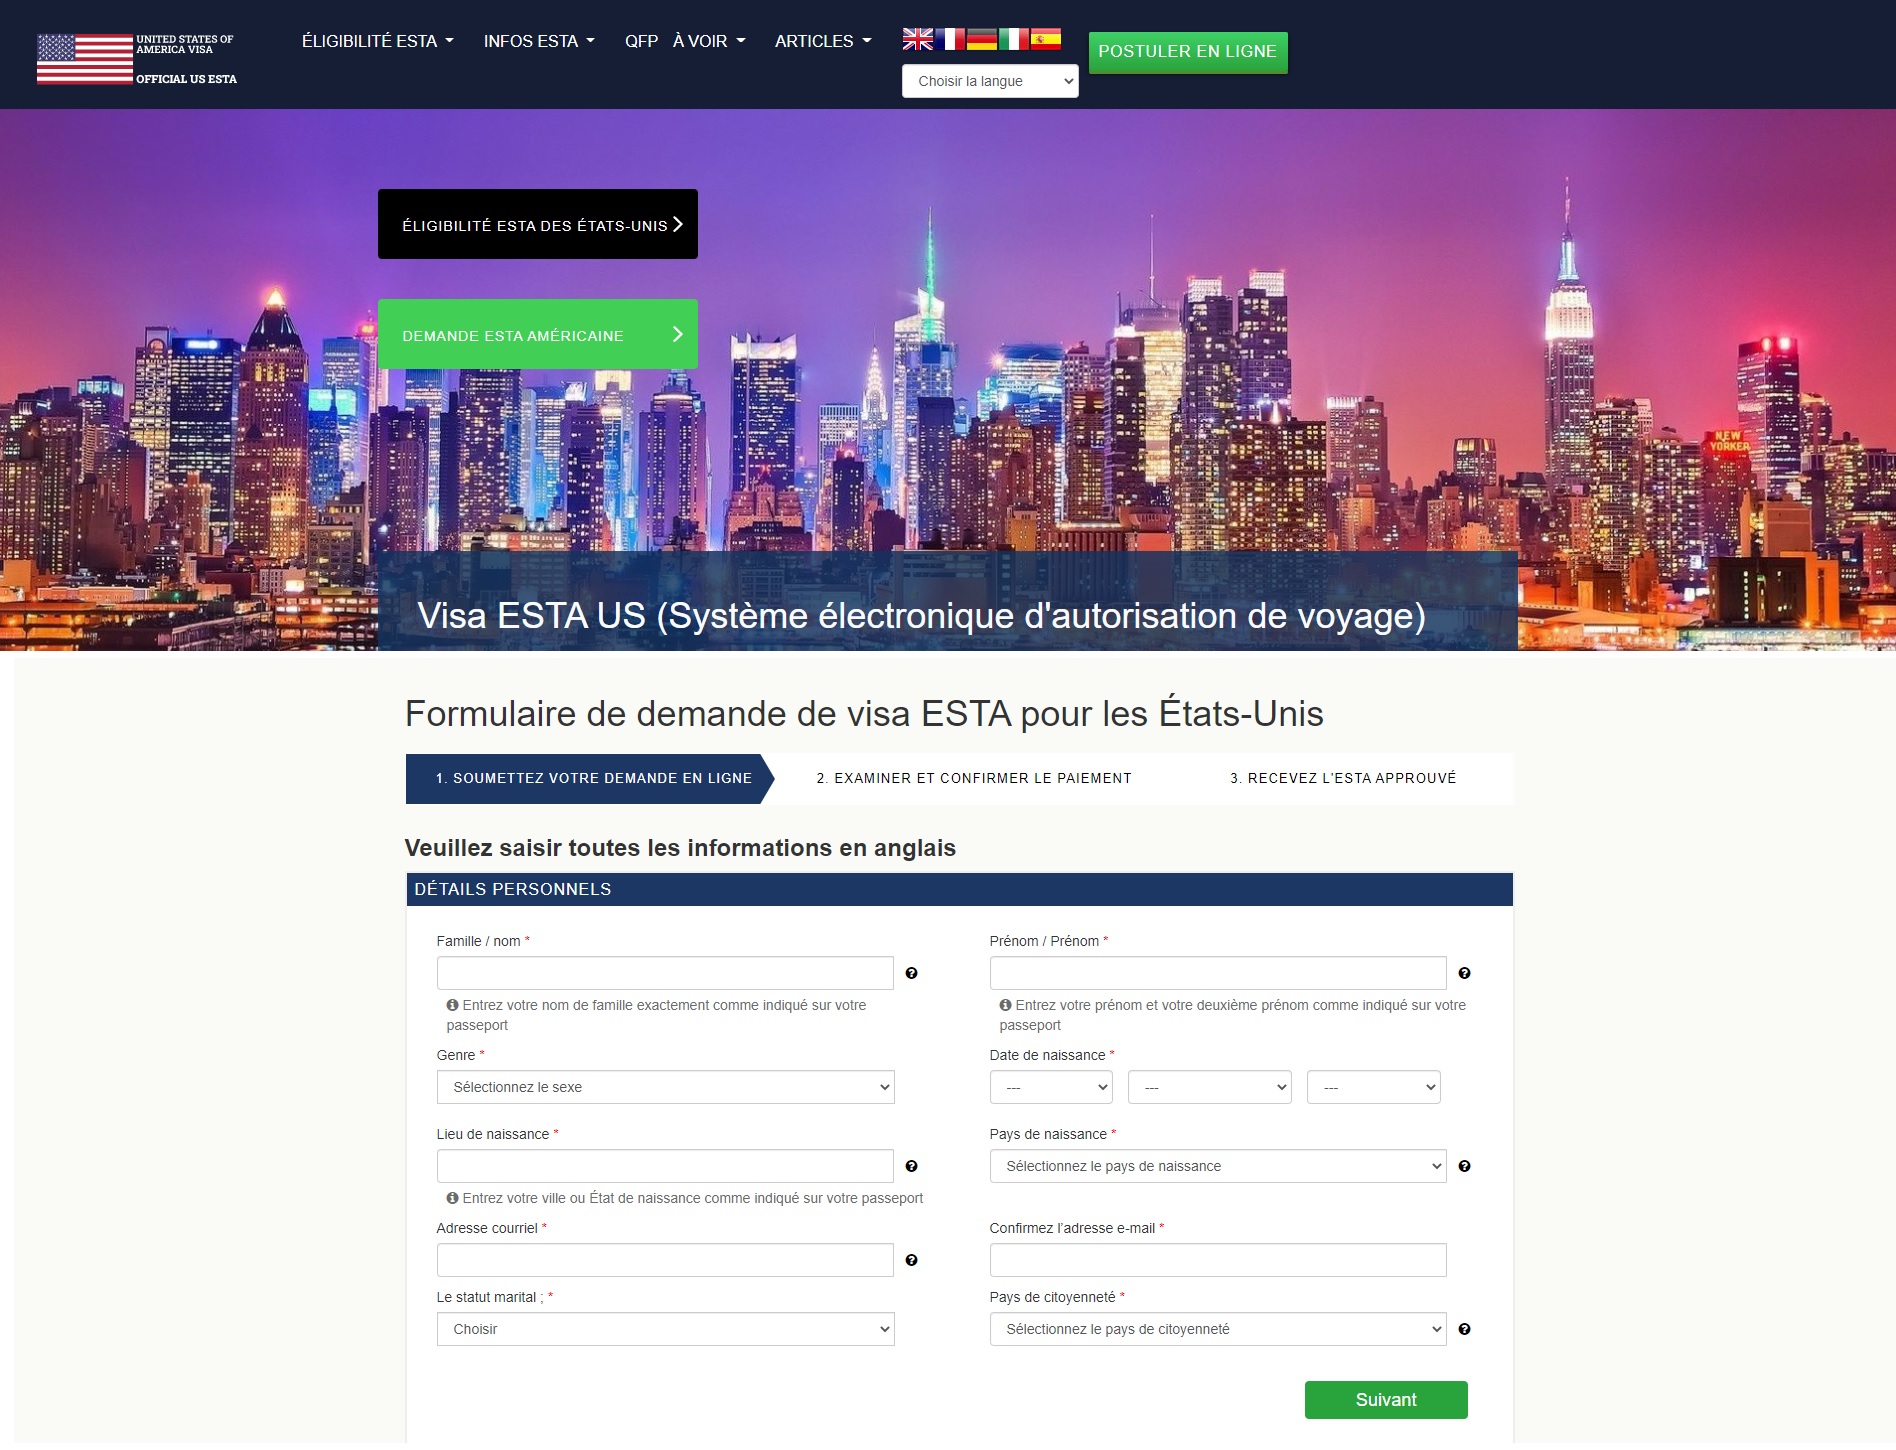 ESTA 美国签证语言支持